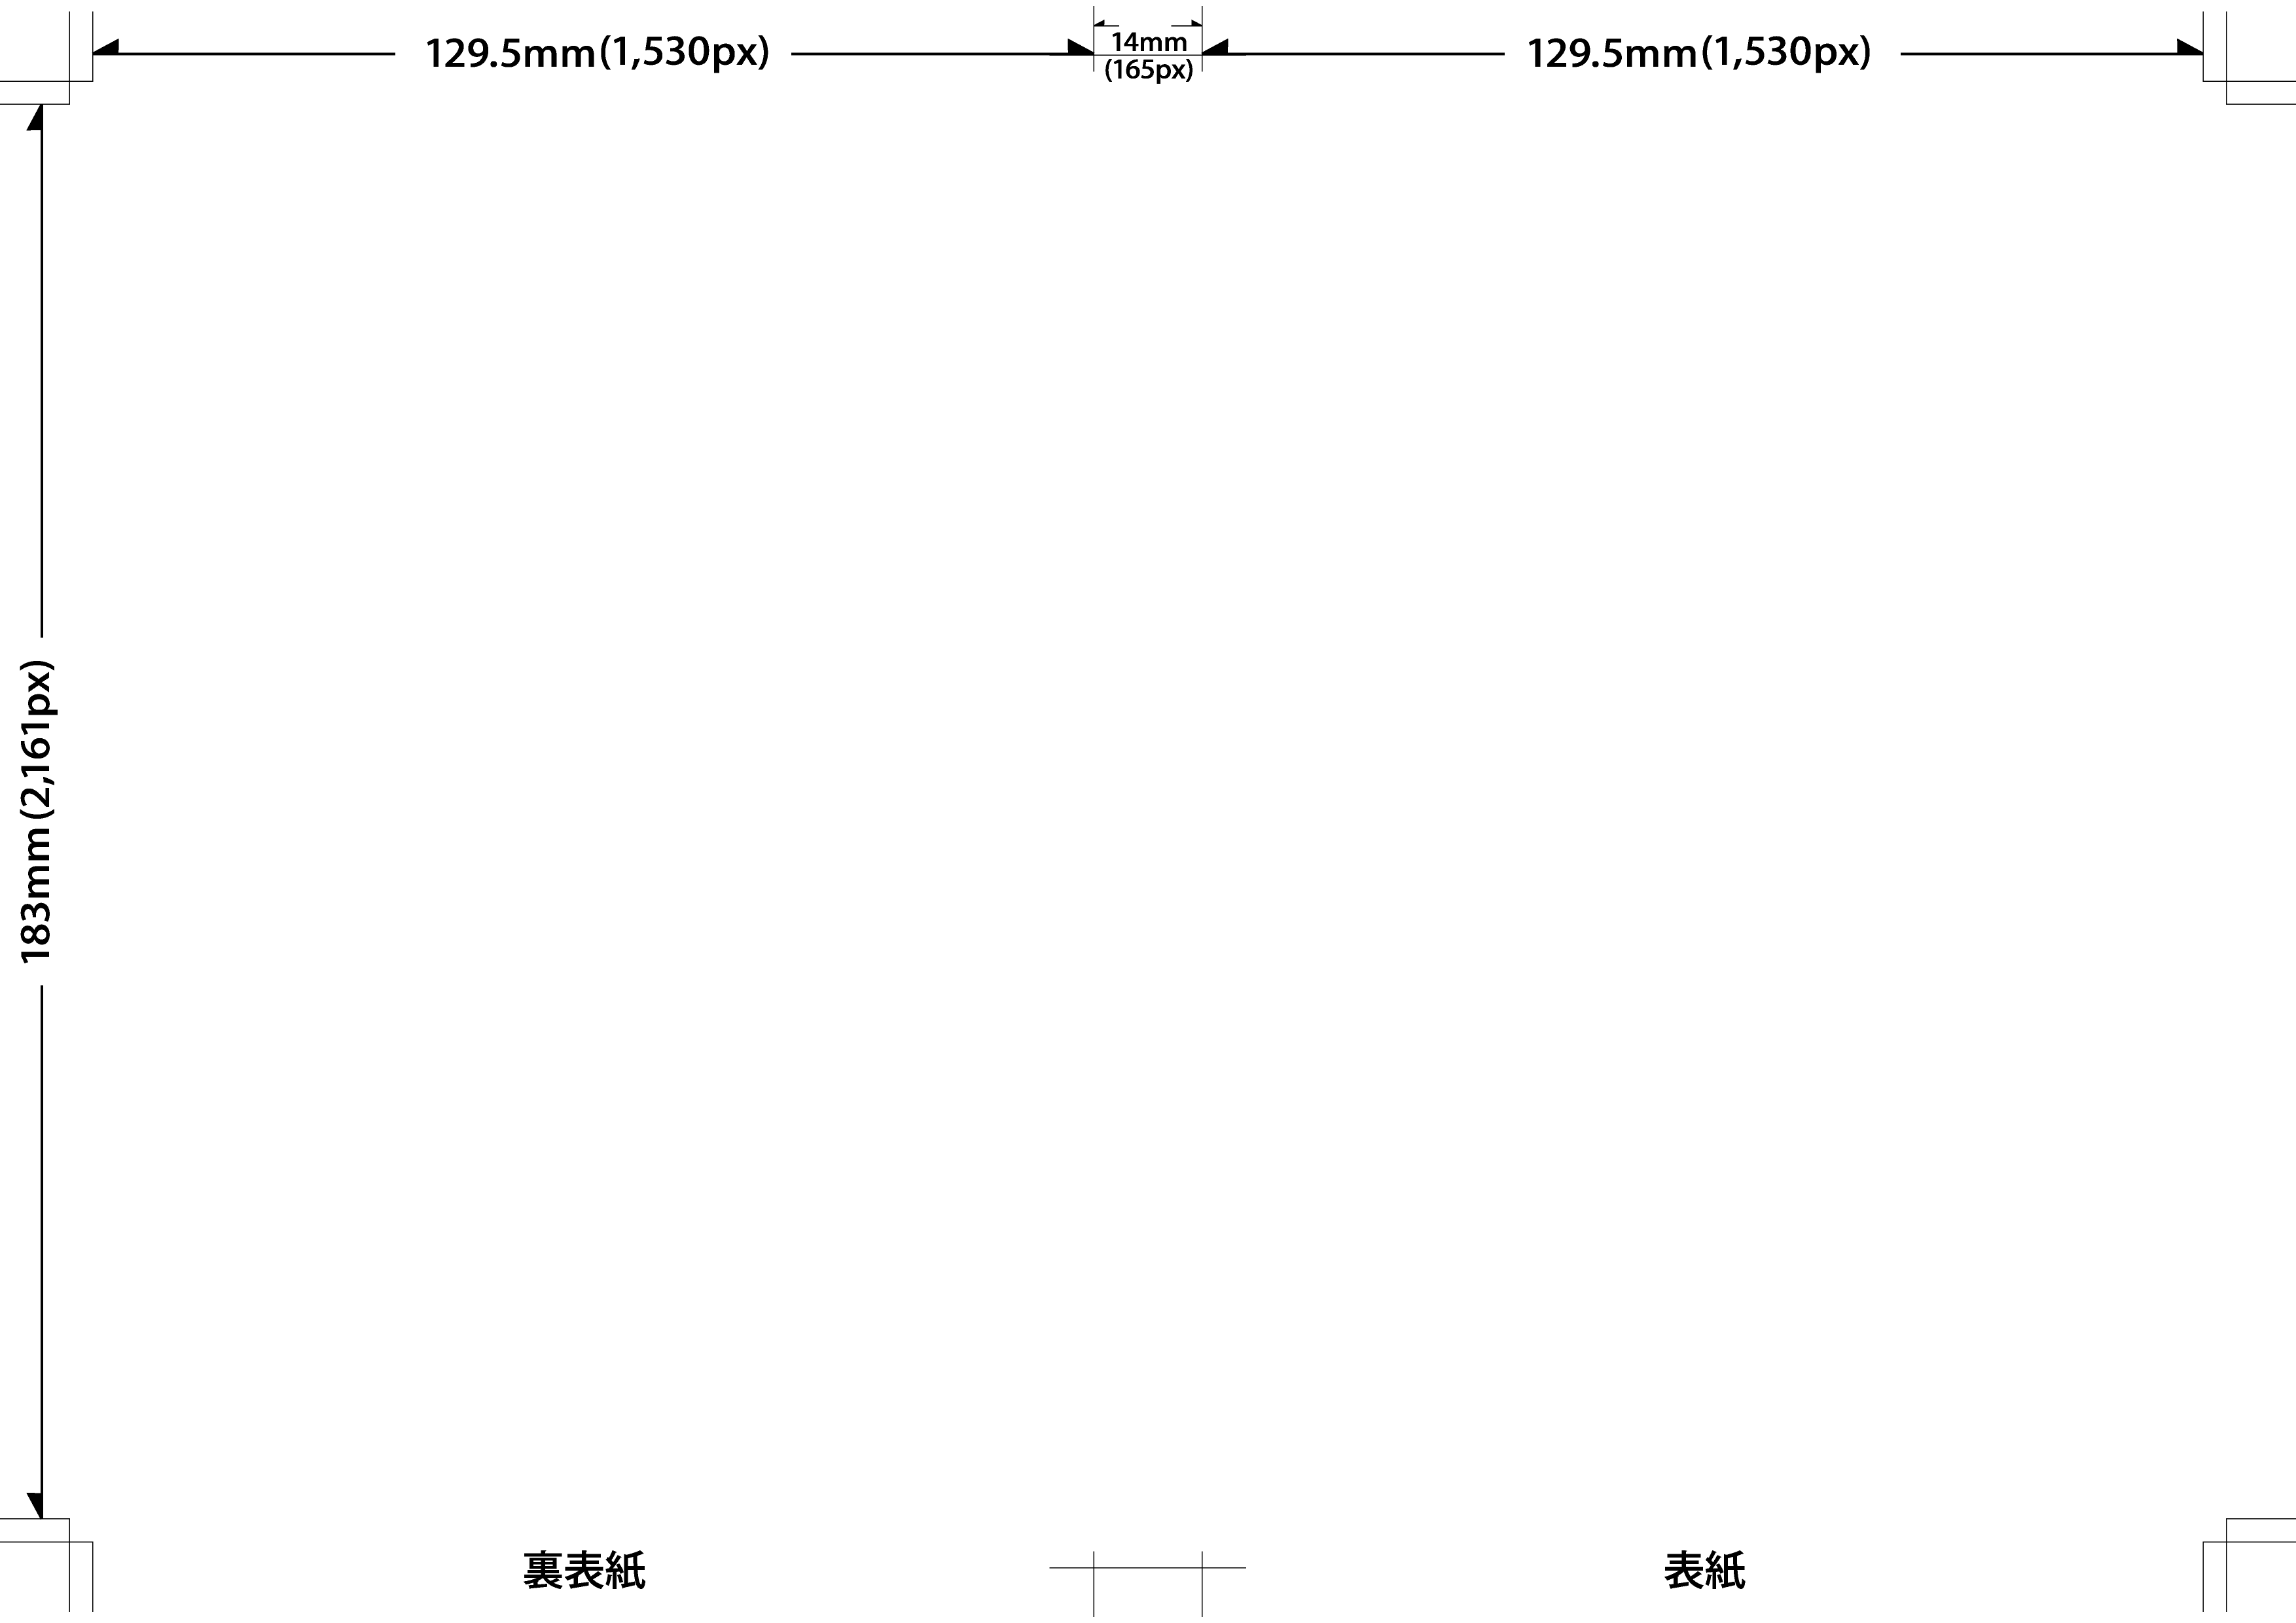 一般的なDVDジャケット(アマレーサイズ)の寸法(mm/px)